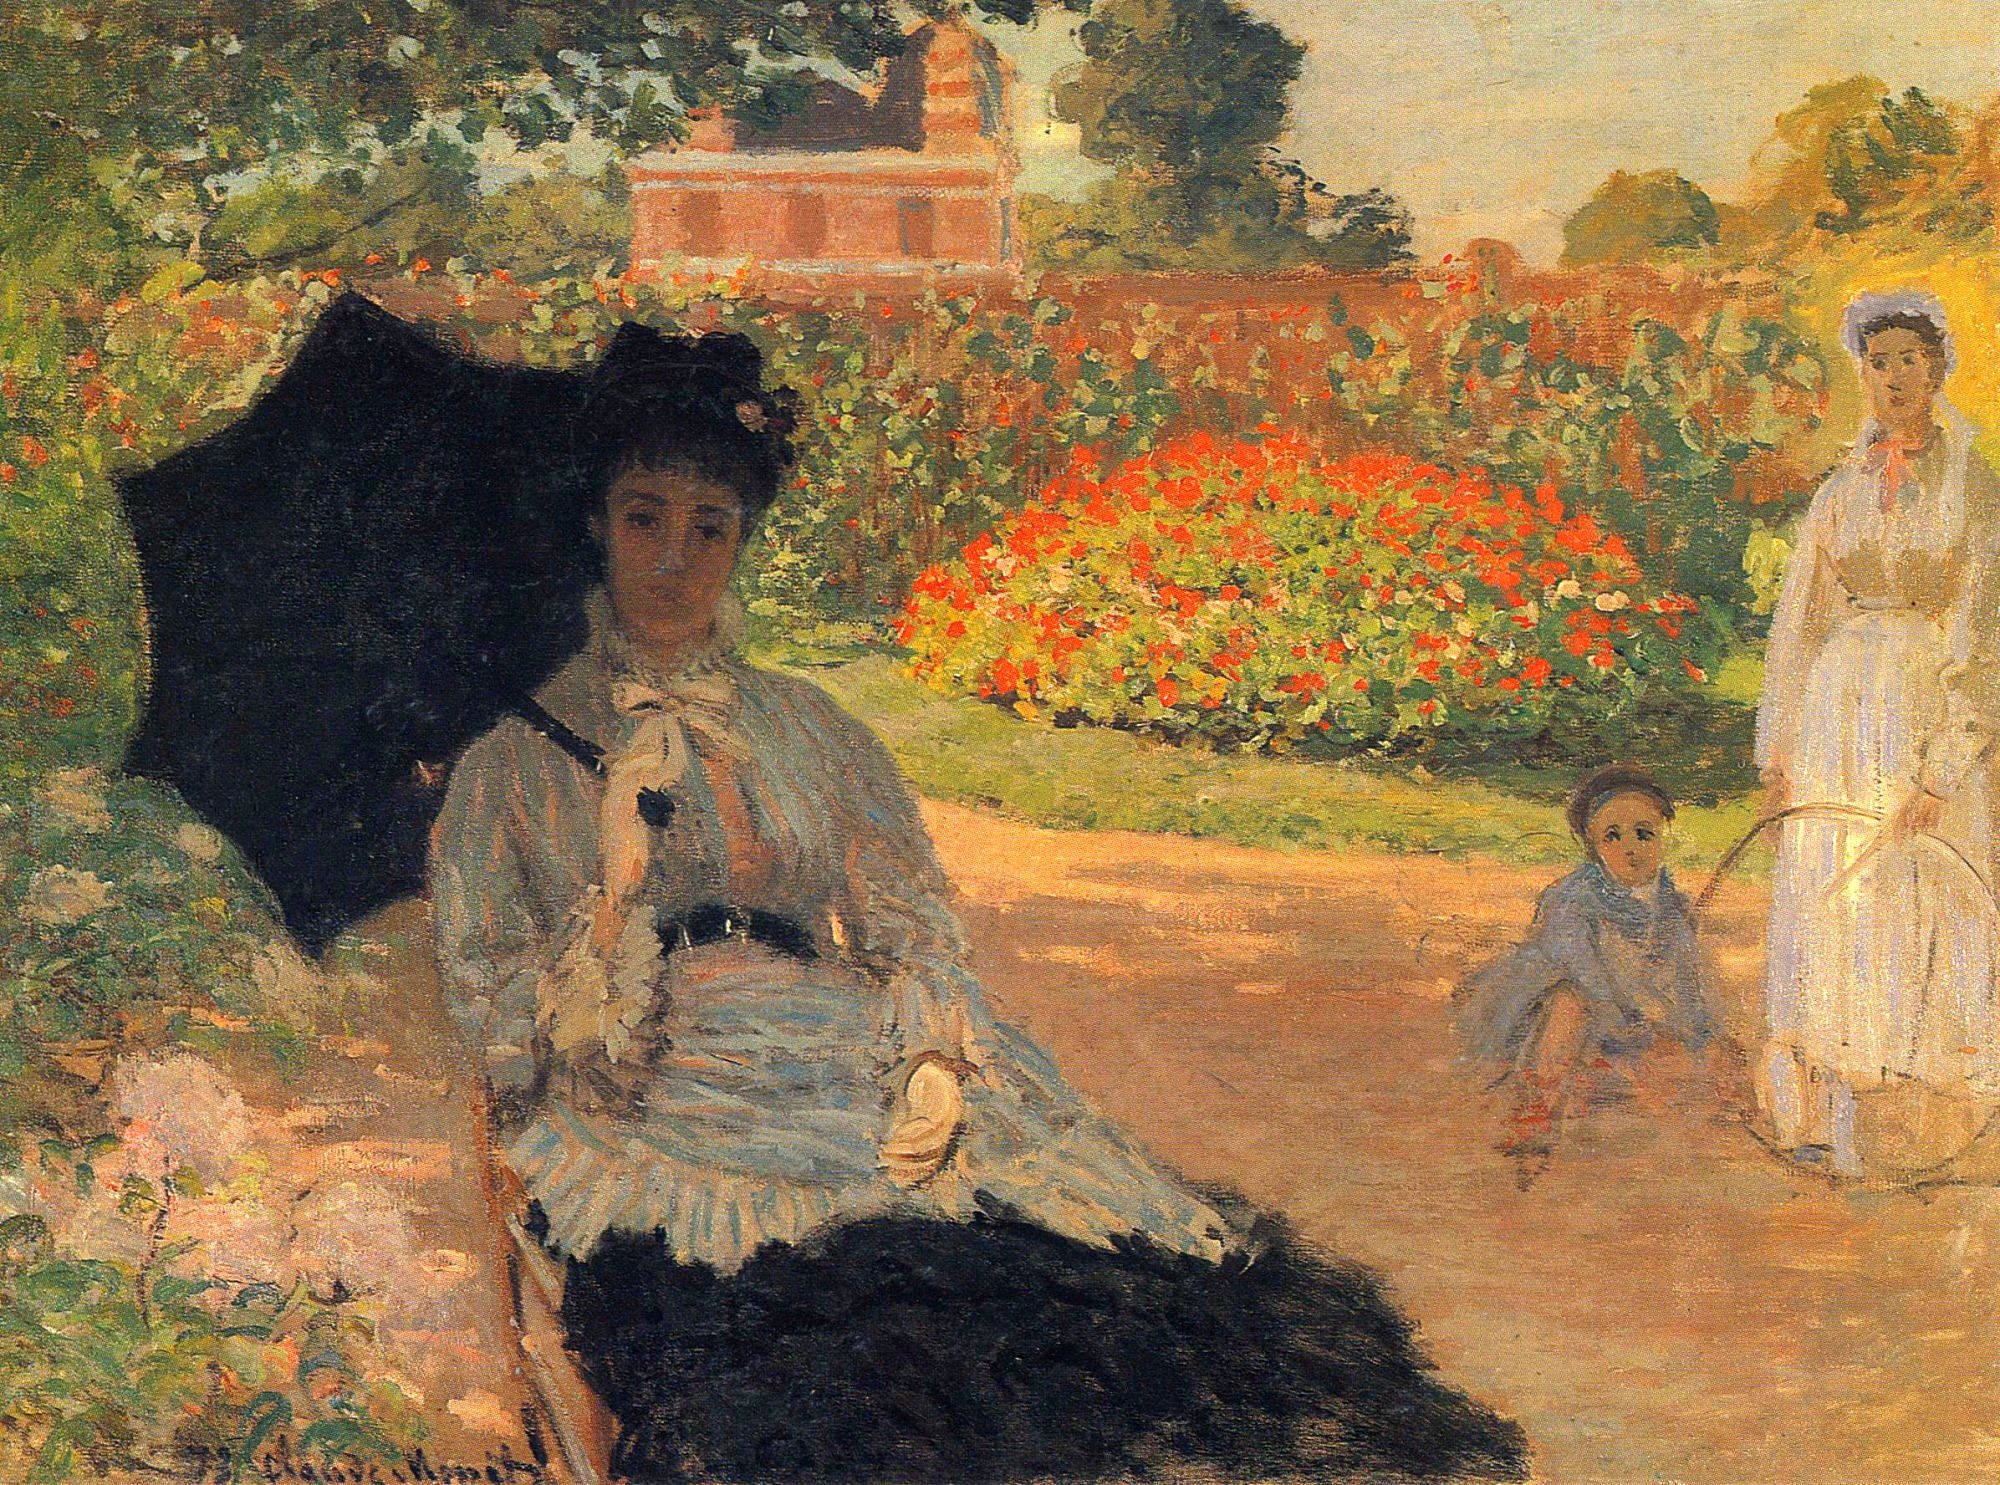 Camille Monet in the Garden by Claude Monet - 1873 - 79.5 x 59 cm 